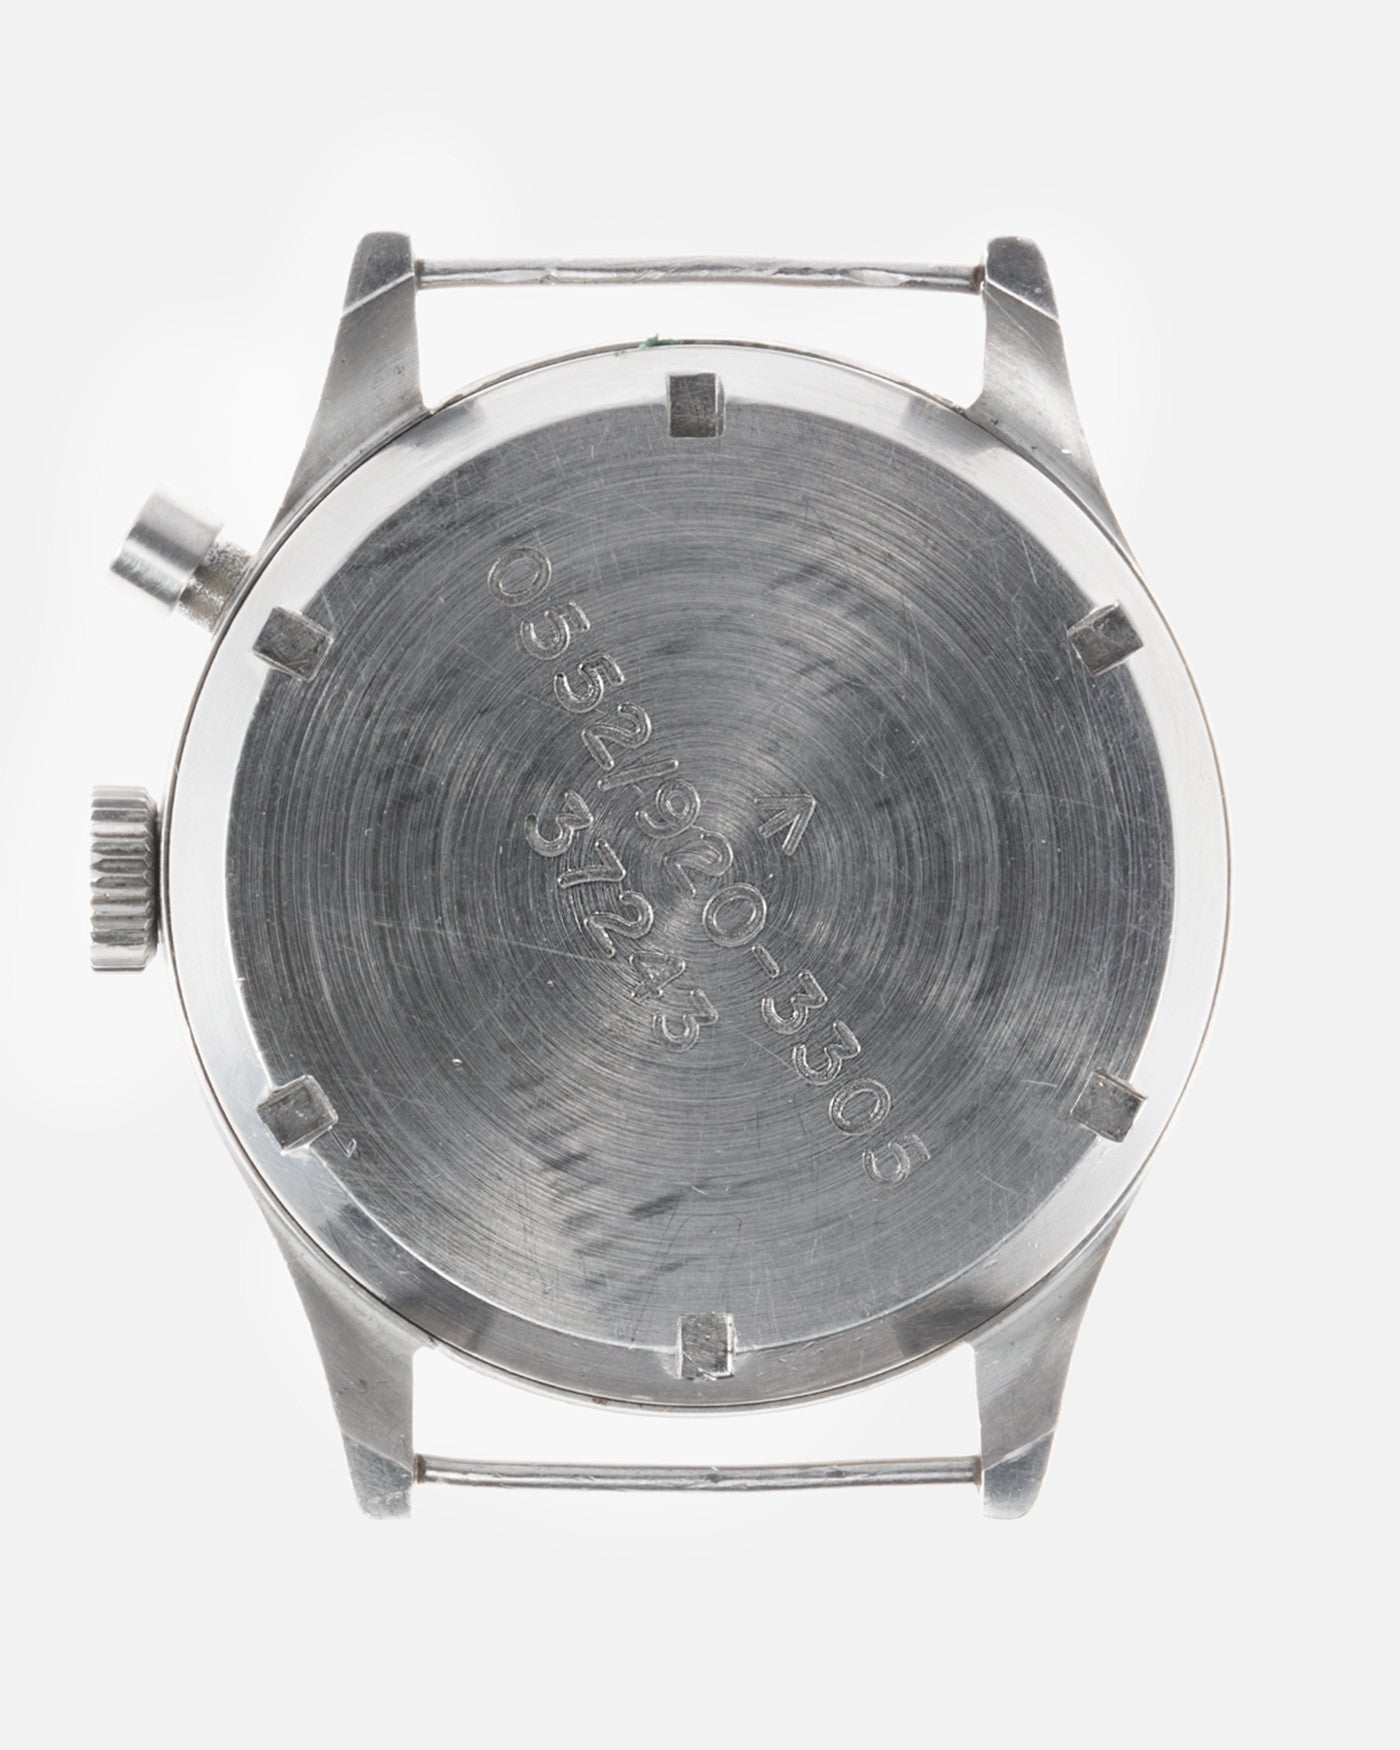 Lemania Royal Navy Monopusher Chronograph